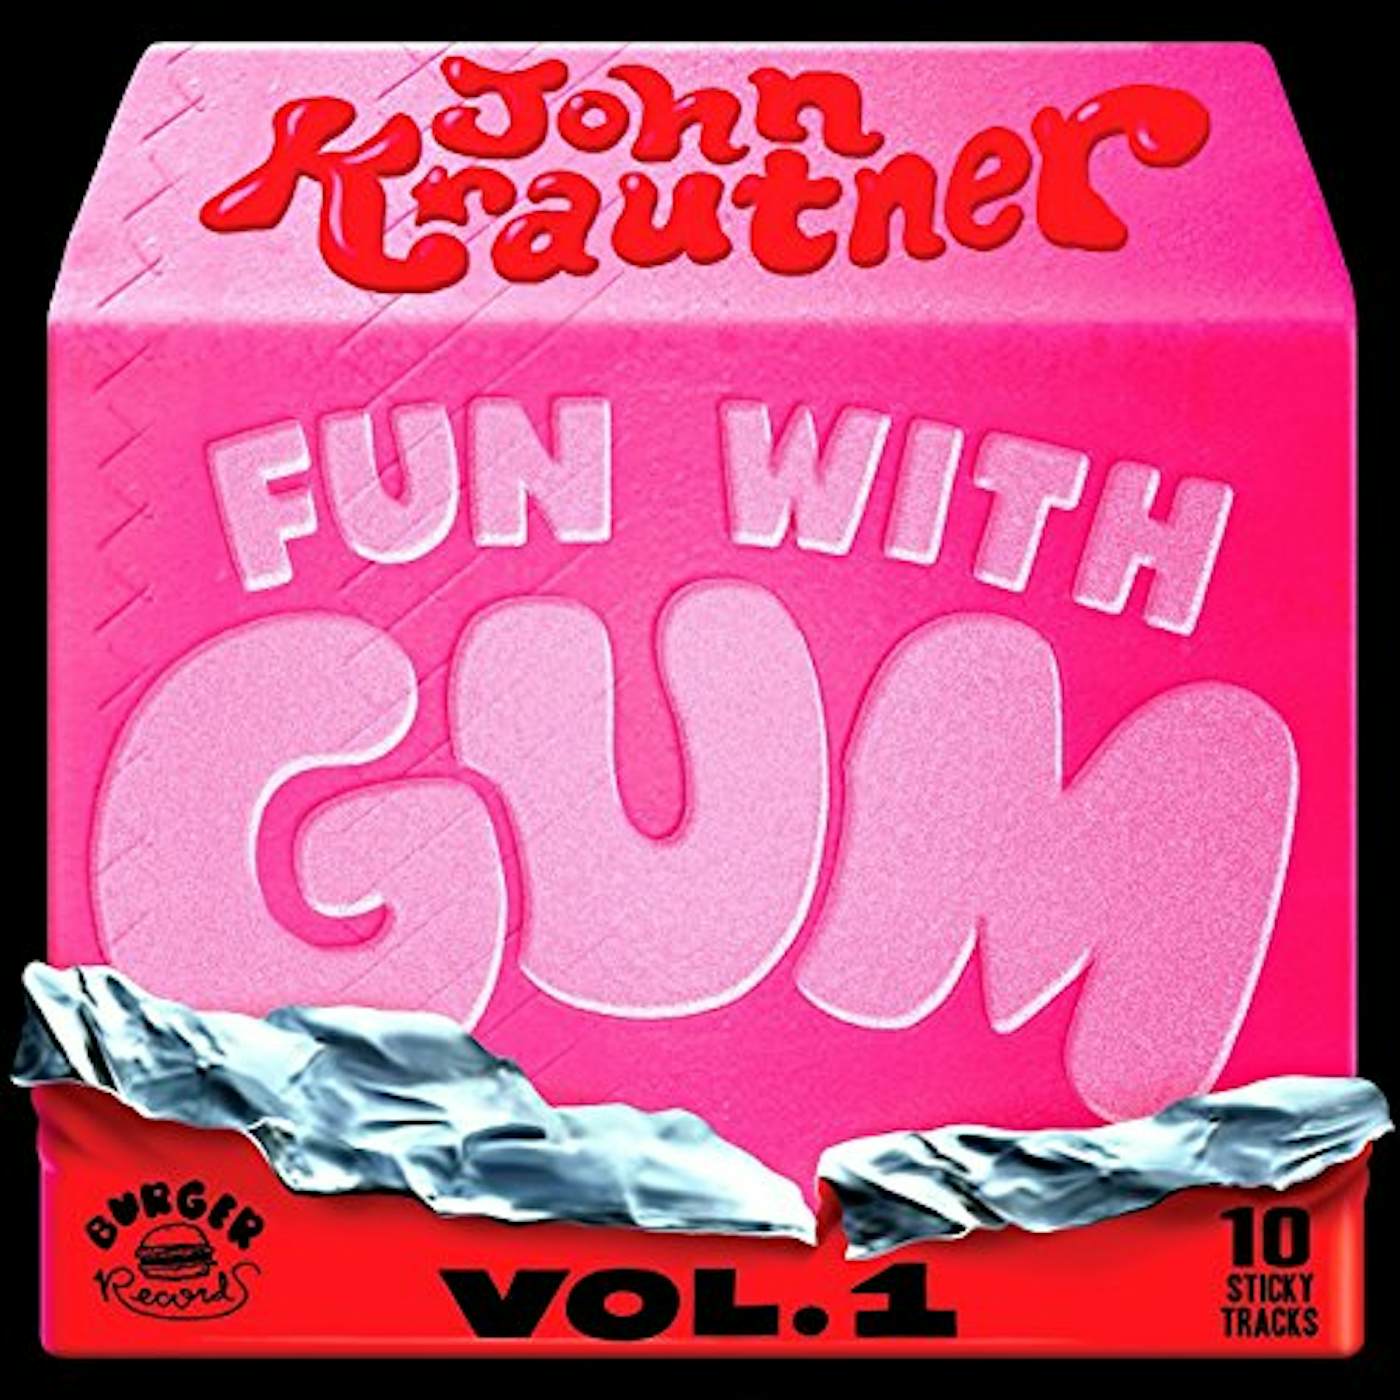 John Krautner FUN WITH GUM 1 CD